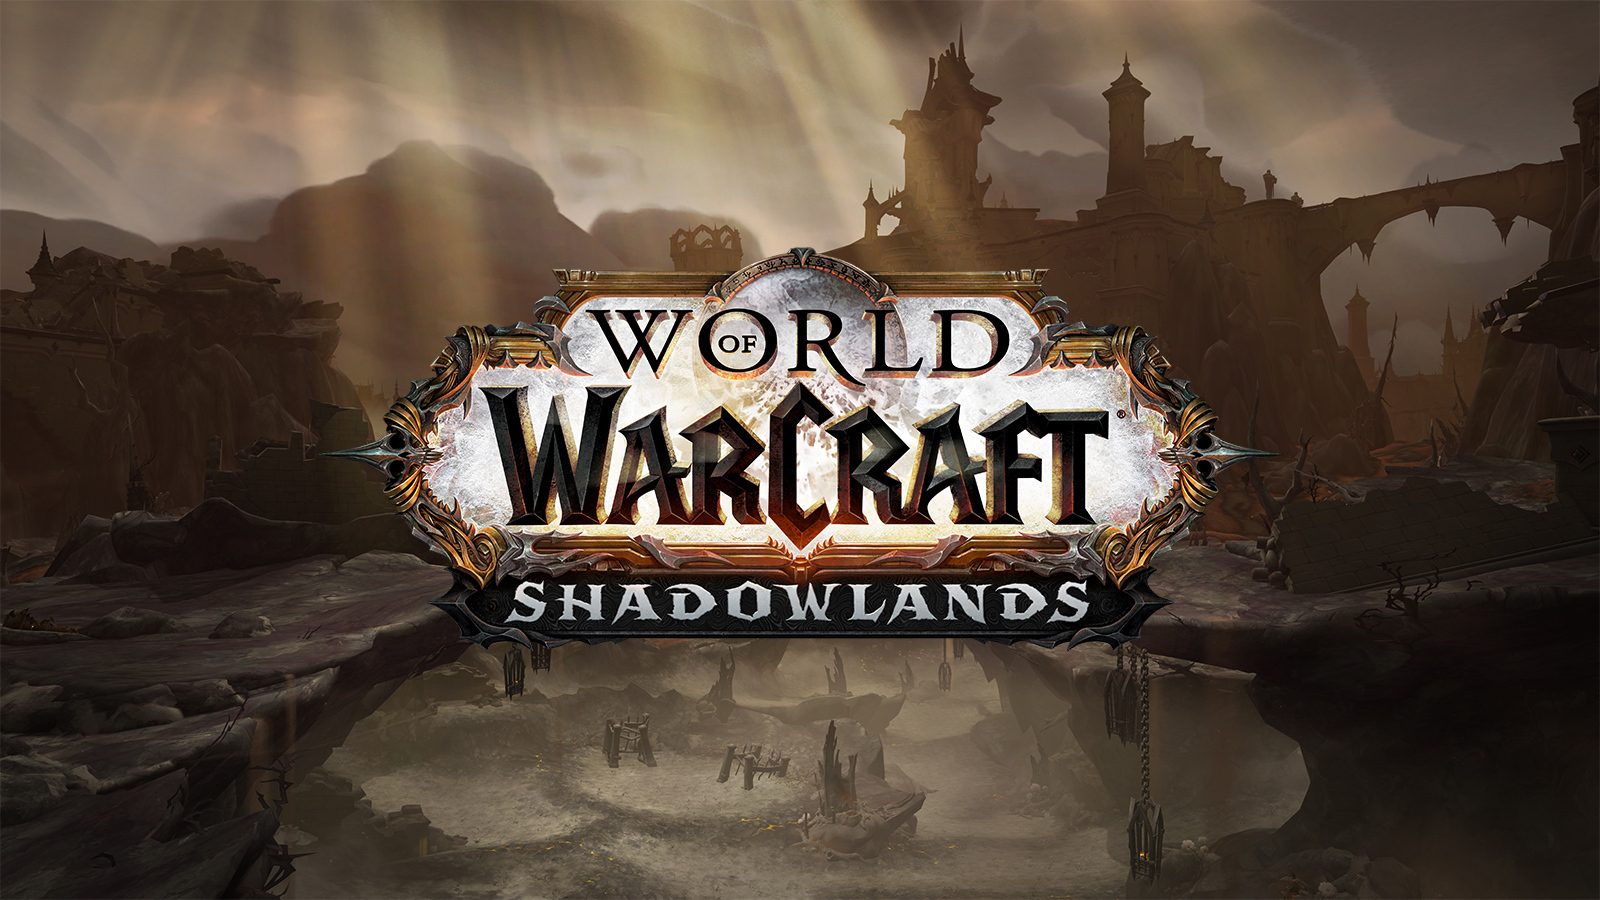 Esta semana no WoW: 4 de dezembro de 2023 — World of Warcraft